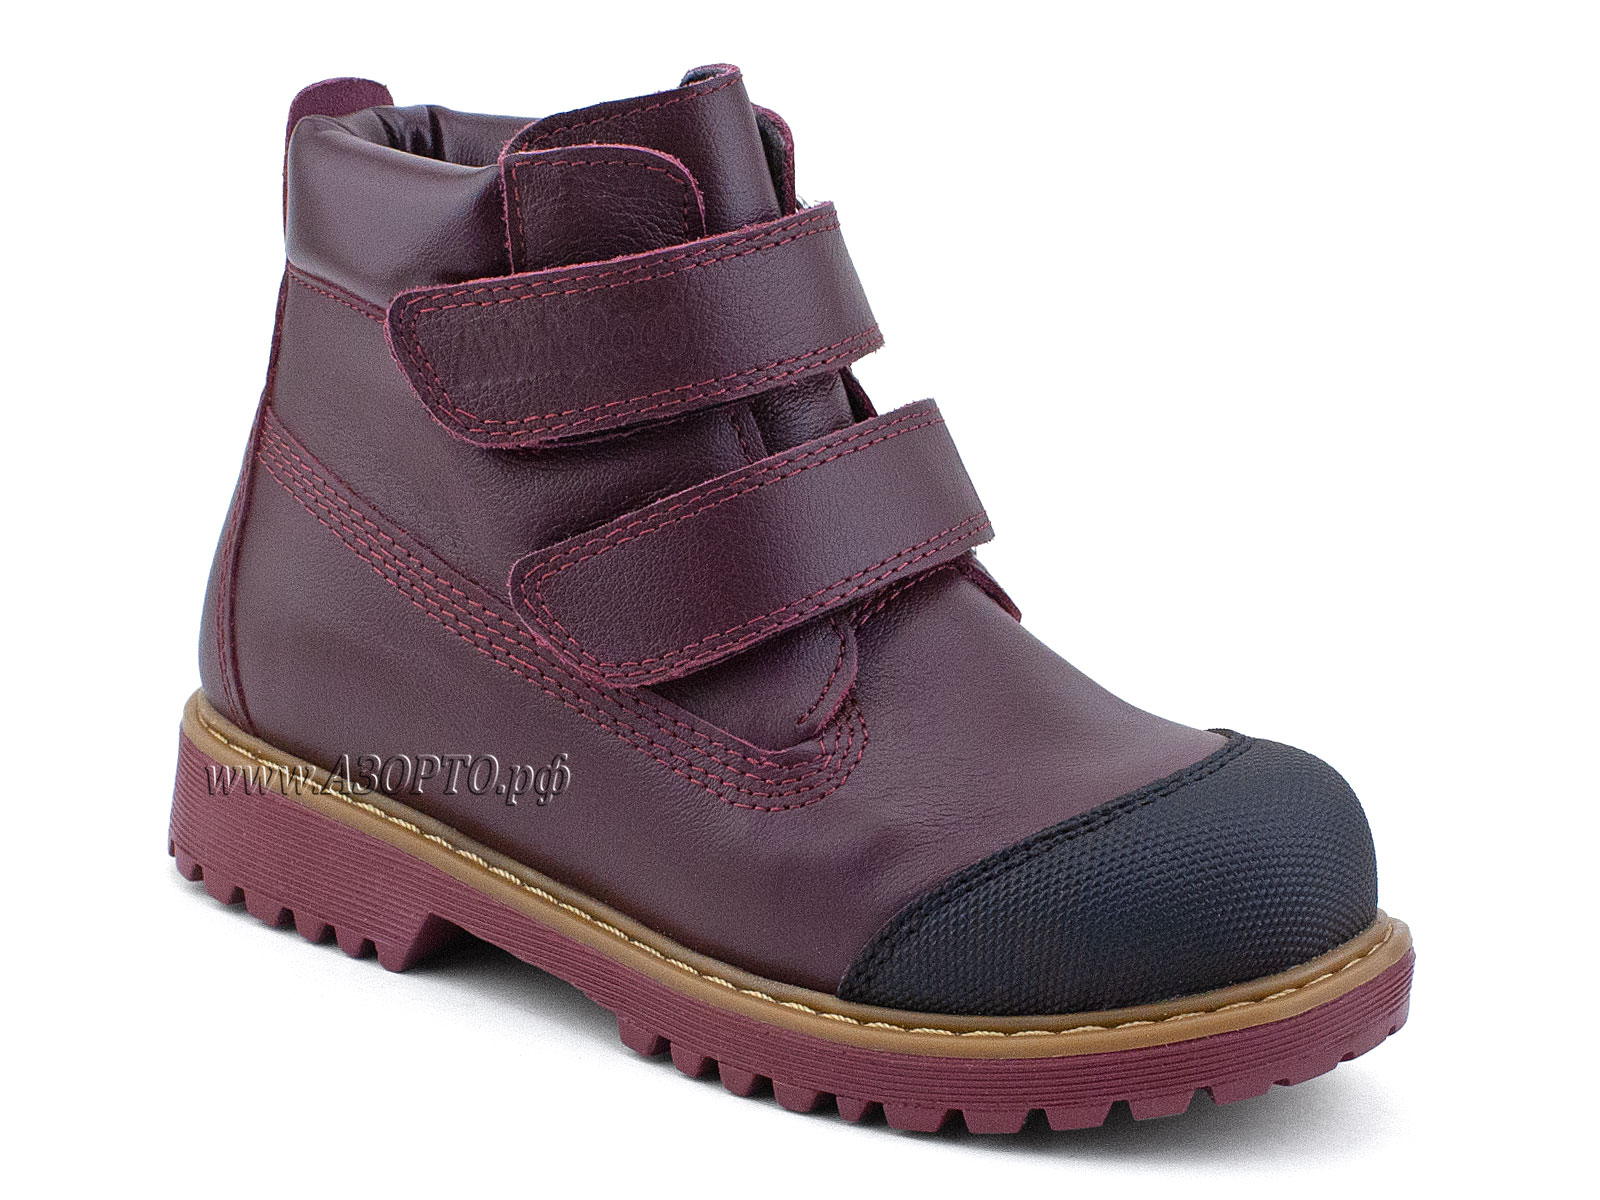 505 Б(31-36) Минишуз(Minishoes), ботинки ортопедические профилактические, демисезонные утепленные,  кожа, байка, бордовый